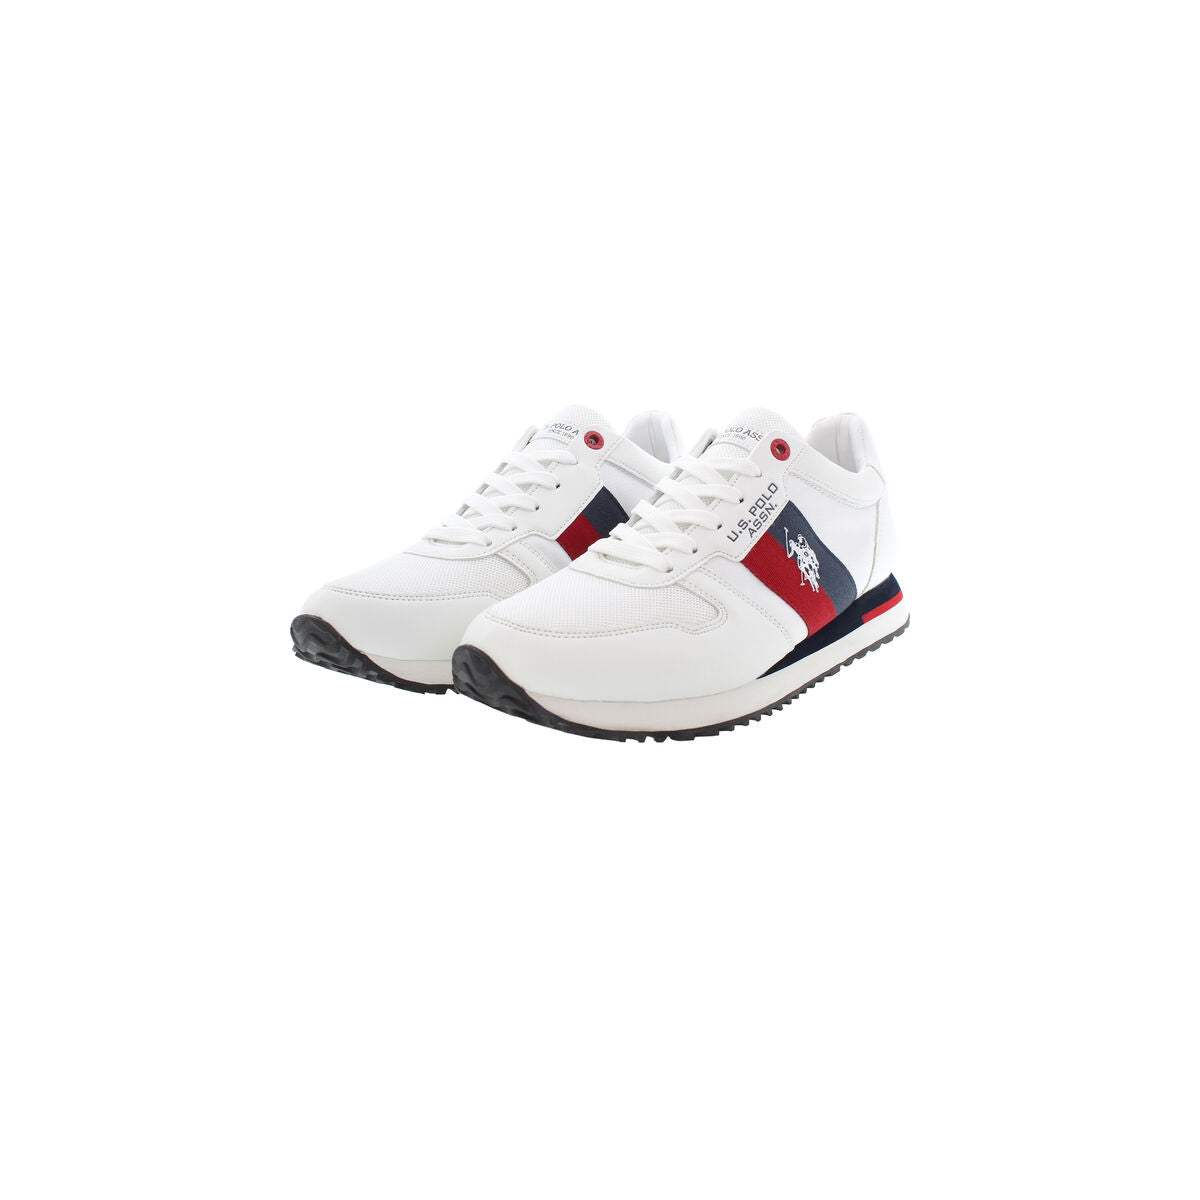 Chaussures de Sport pour Homme U.S. Polo Assn. XIRIO007 Blanc - U.S. Polo Assn. - Jardin D'Eyden - jardindeyden.fr